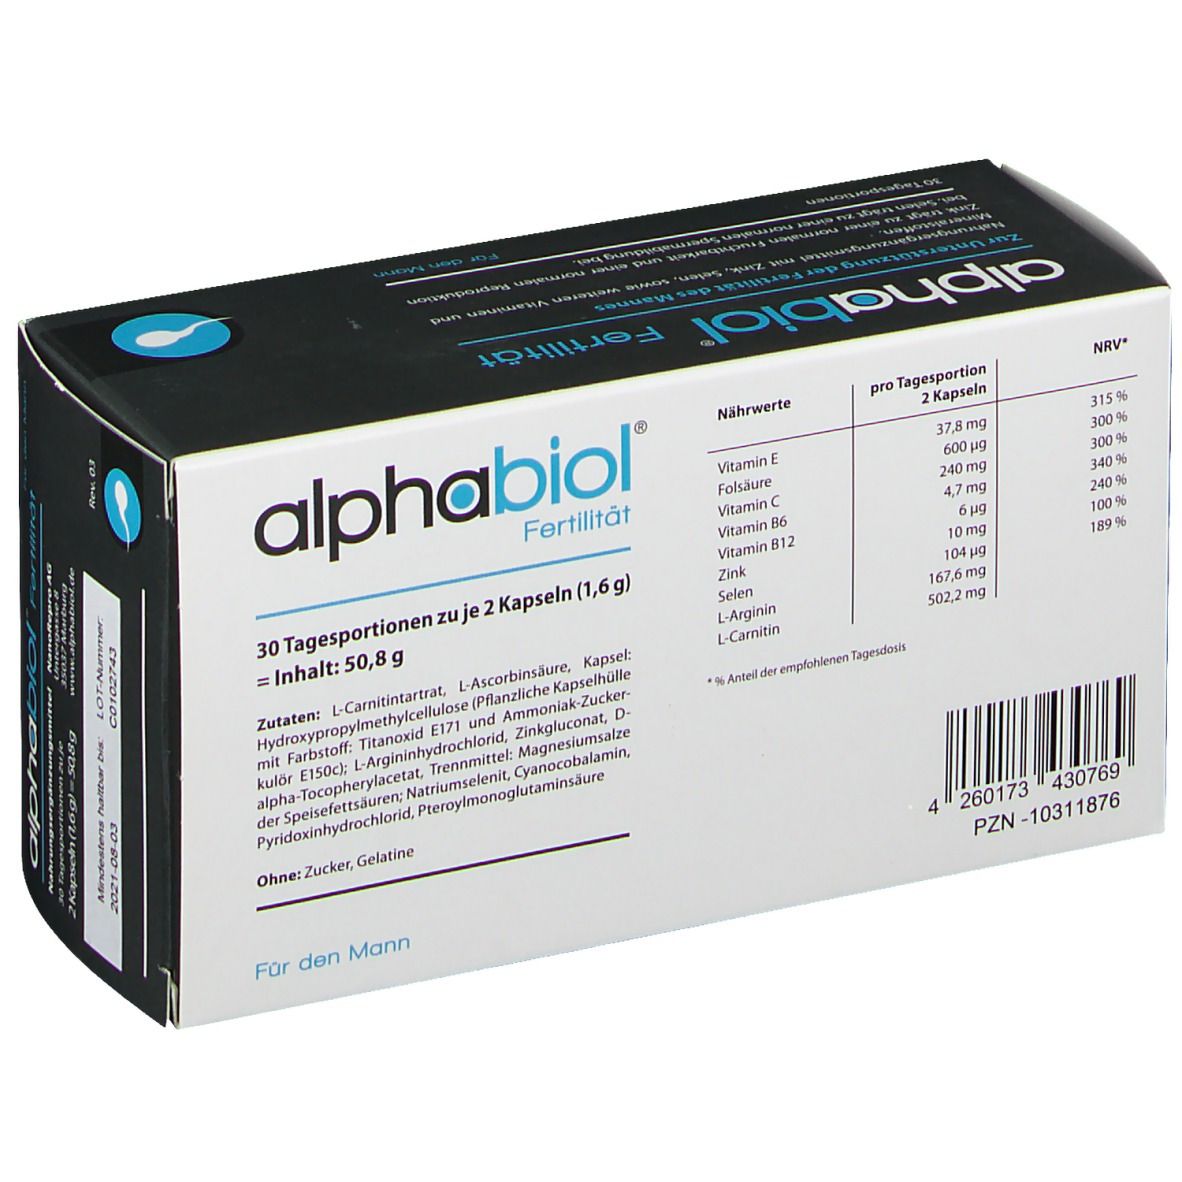 alphabiol® Fertilität